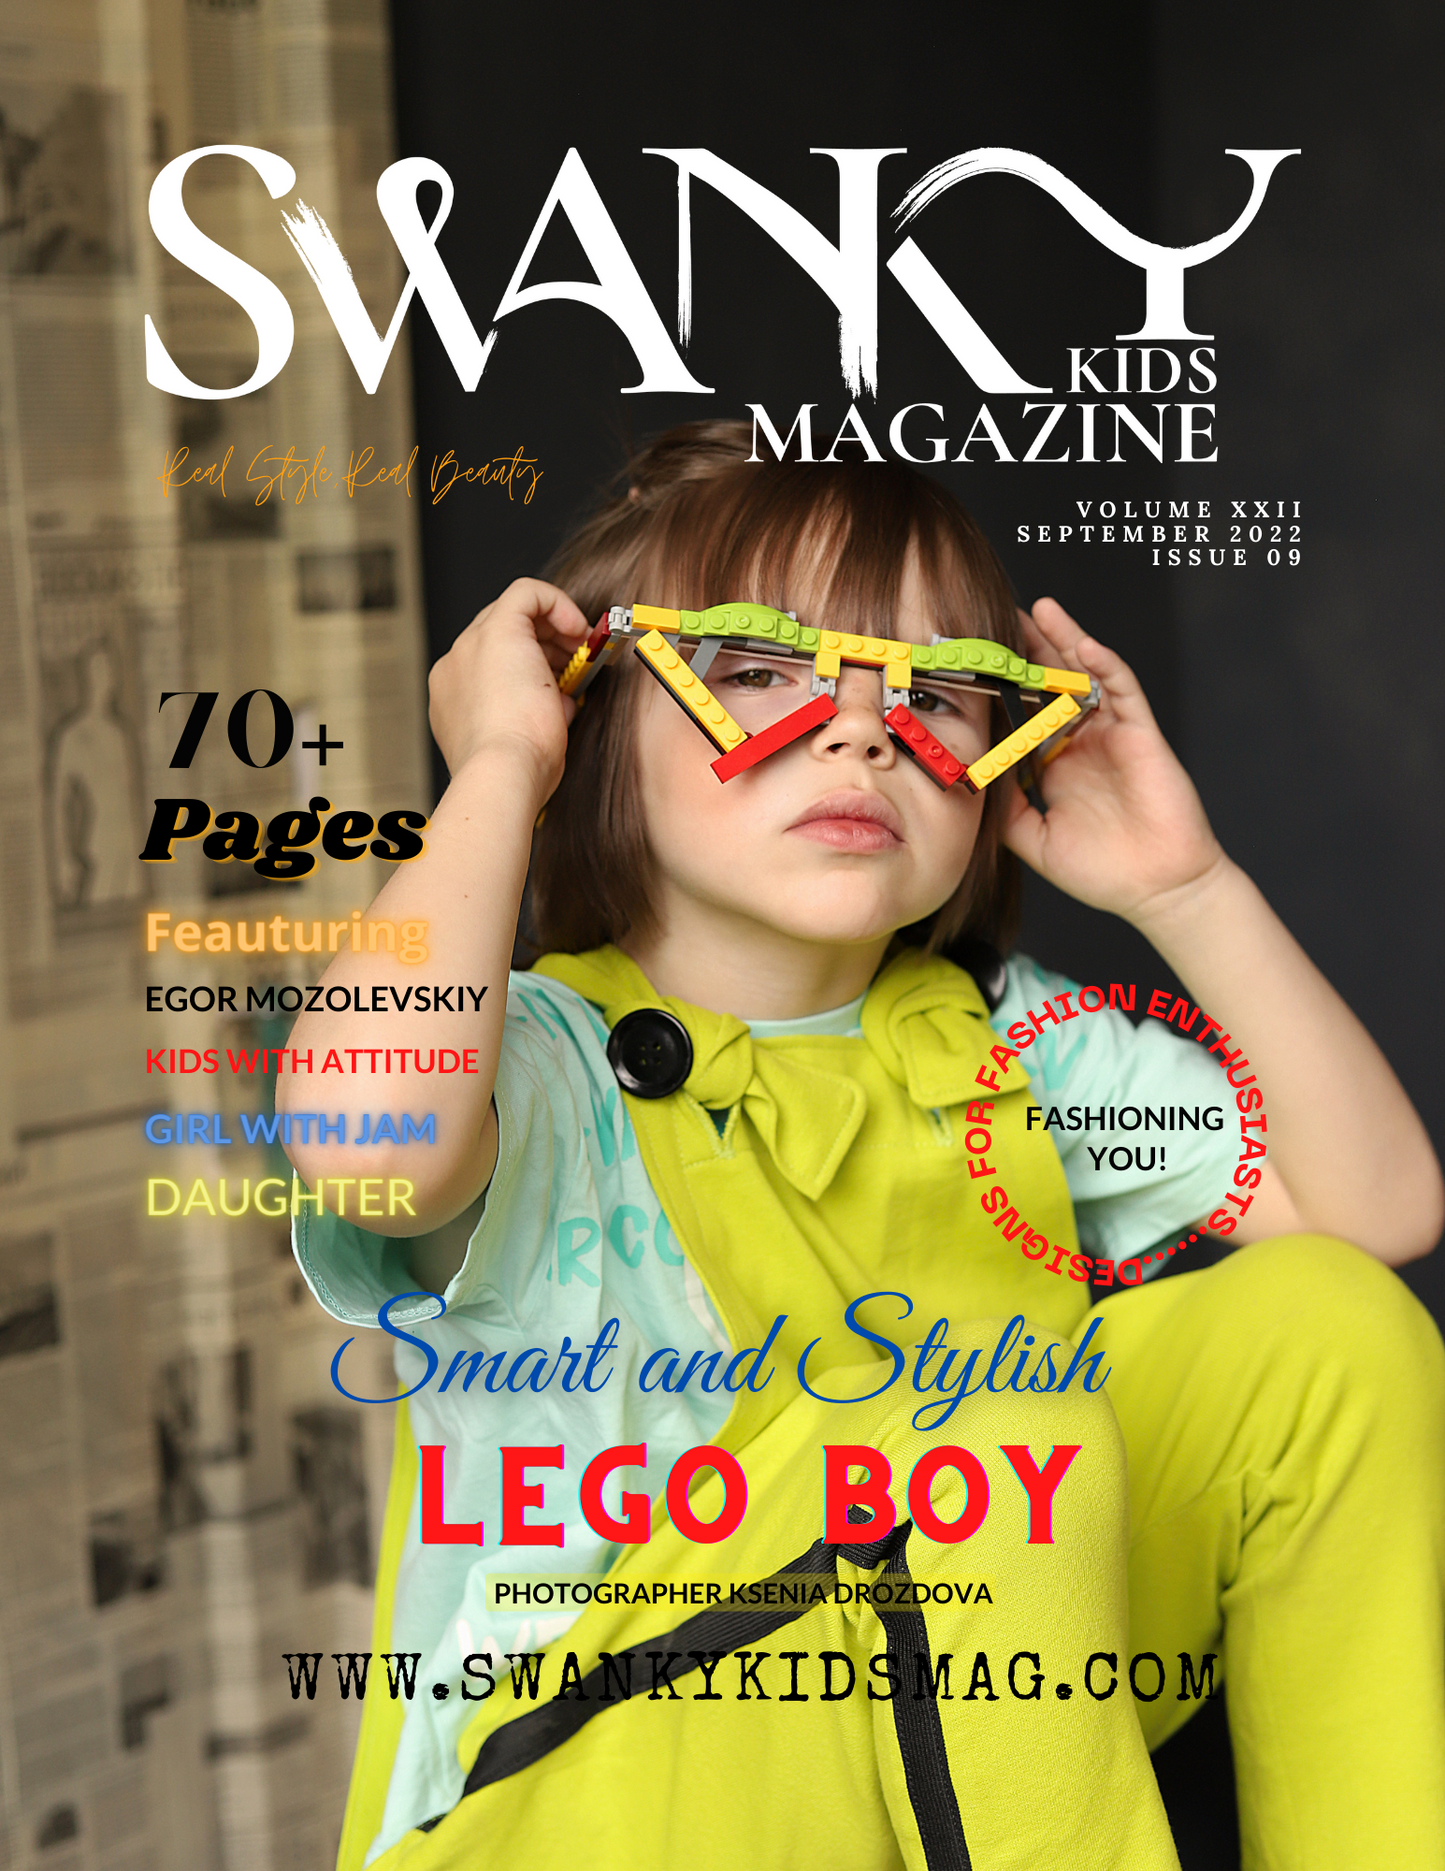 Swanky Kids Magazine September 2022 VOL XXII Issue 09